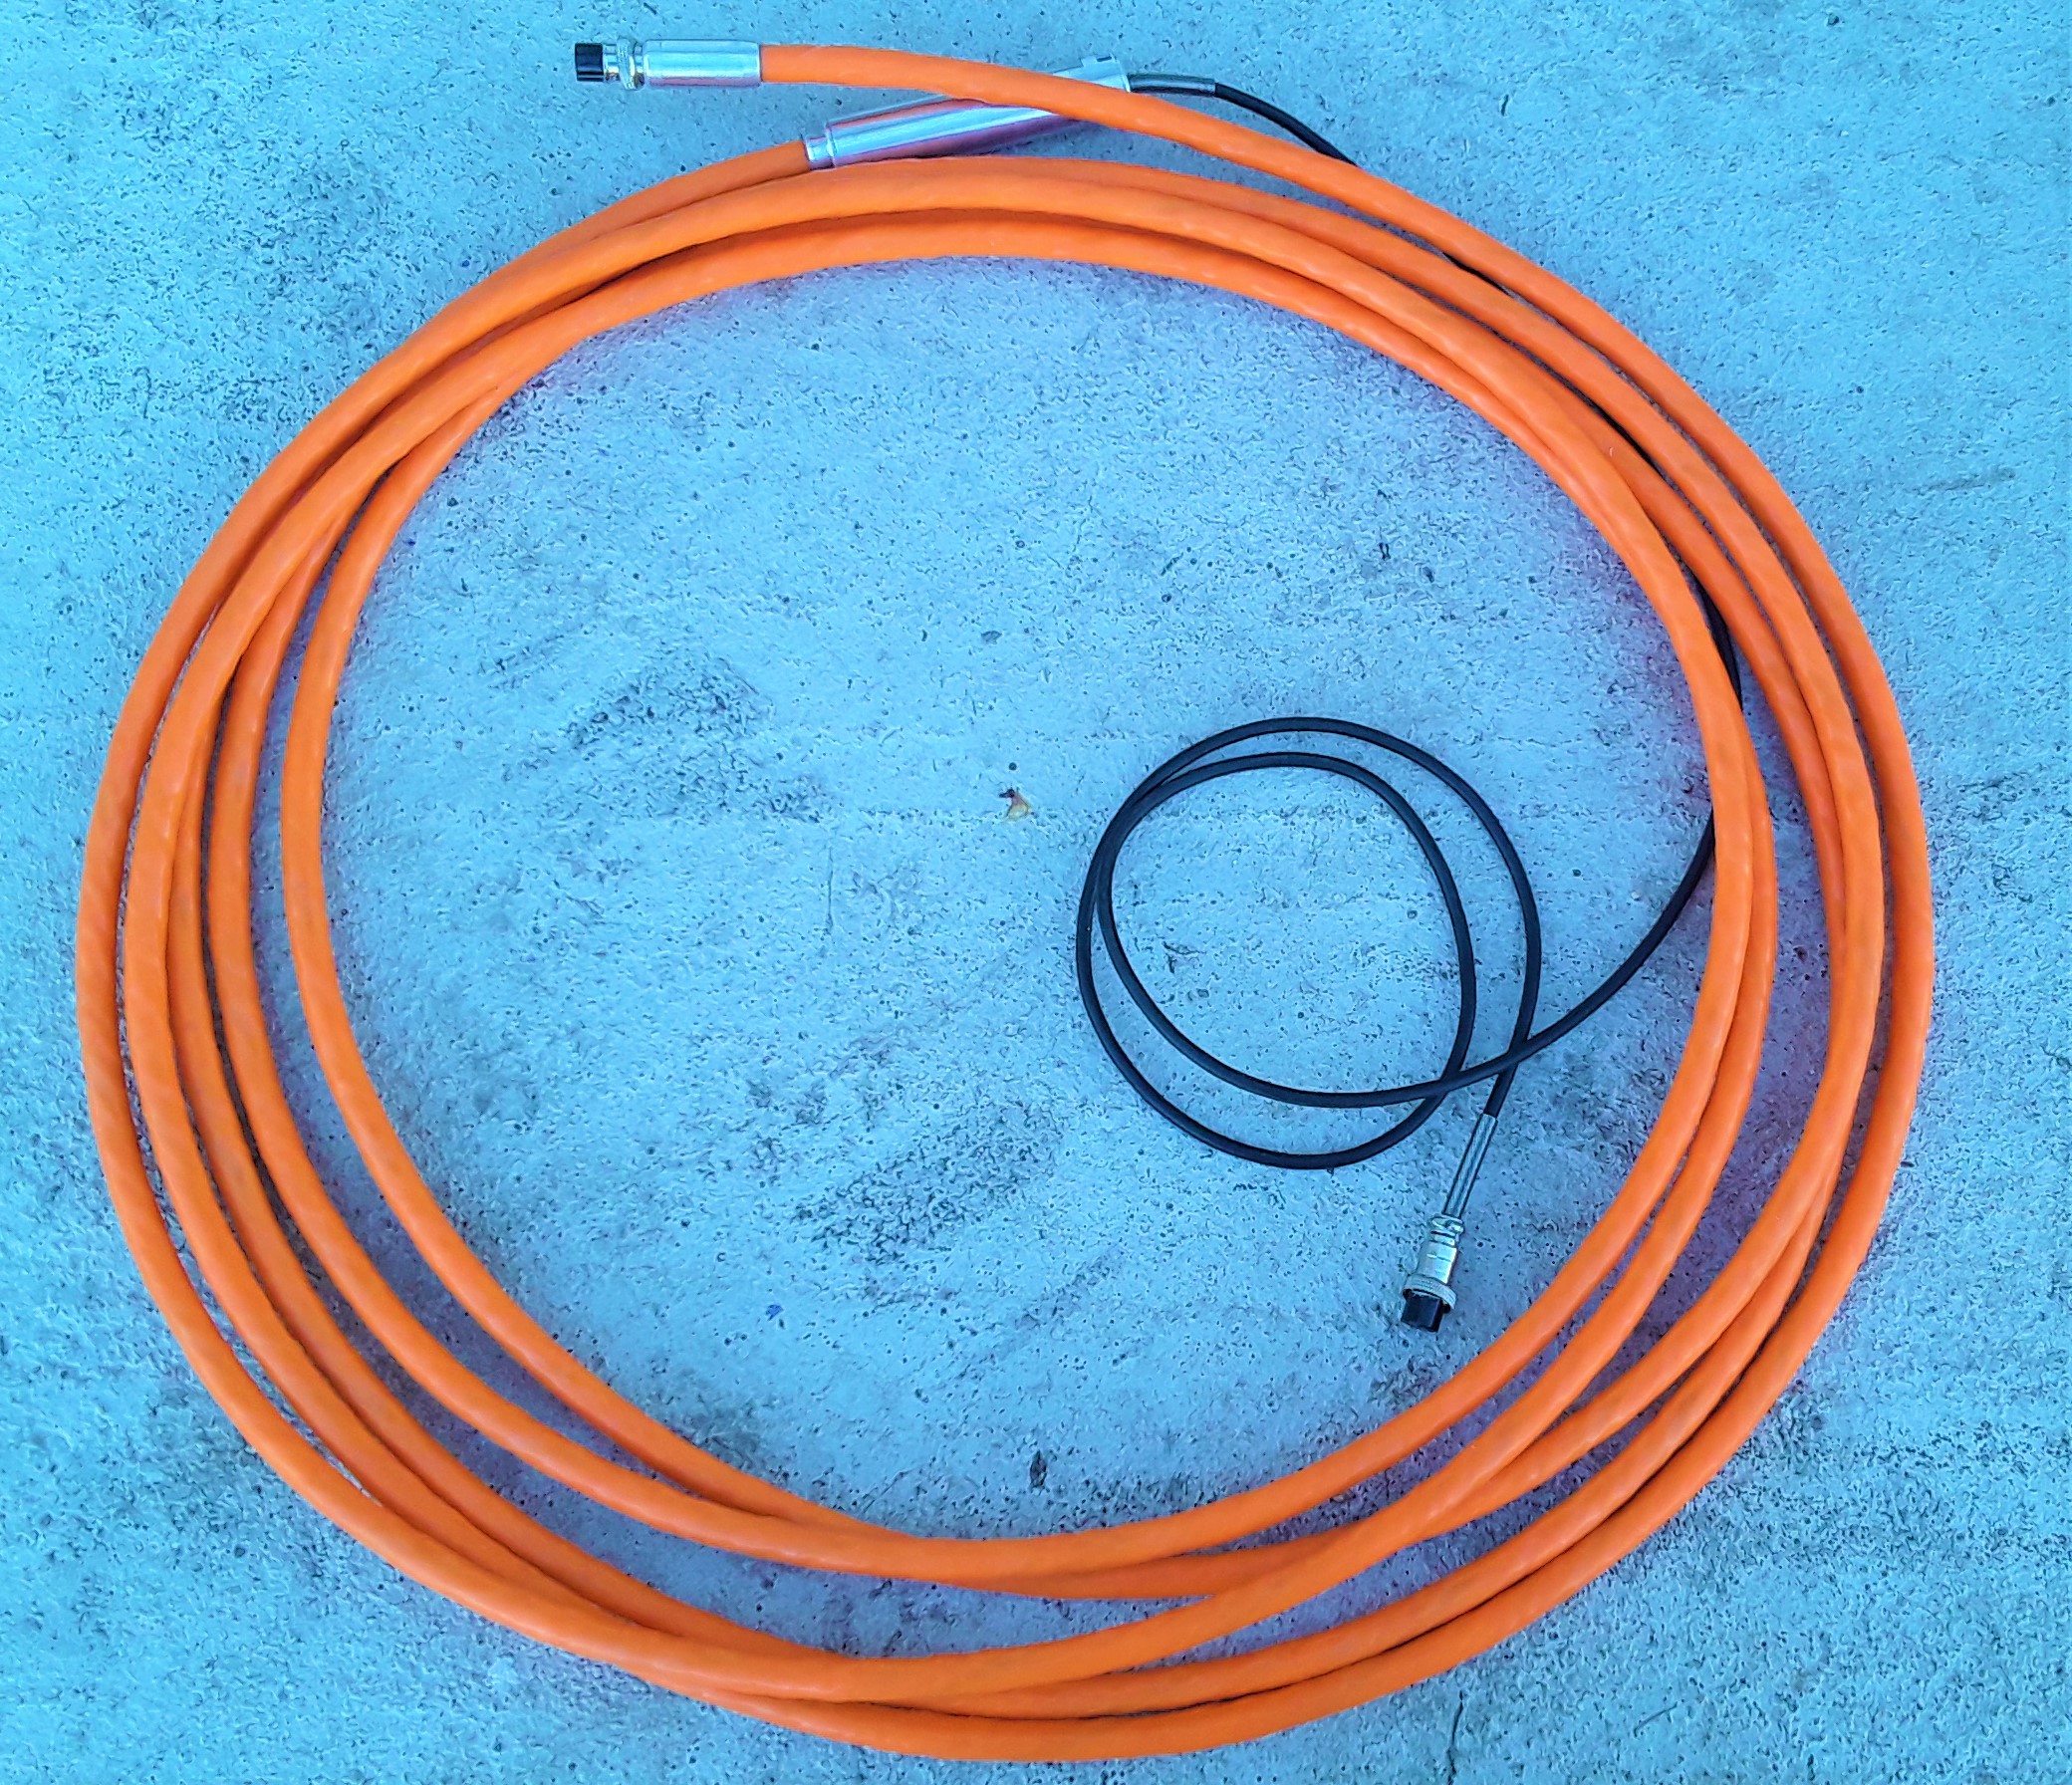 Vaina cable flex reforzado